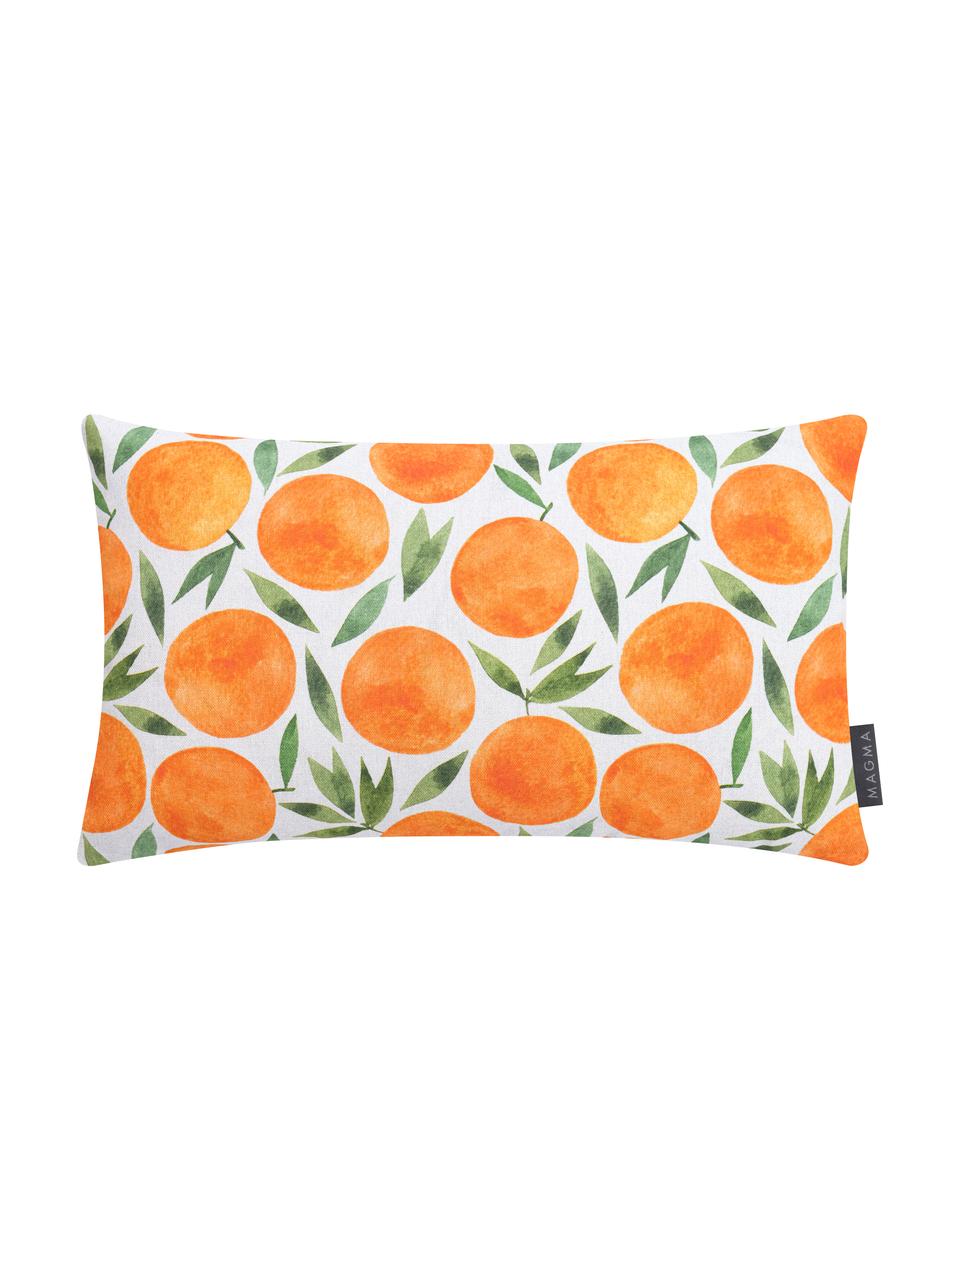 Kissenhülle Orange mit sommerlichem Motiv, Webart: Halbpanama, Orange, Weiß, Grün, 30 x 50 cm